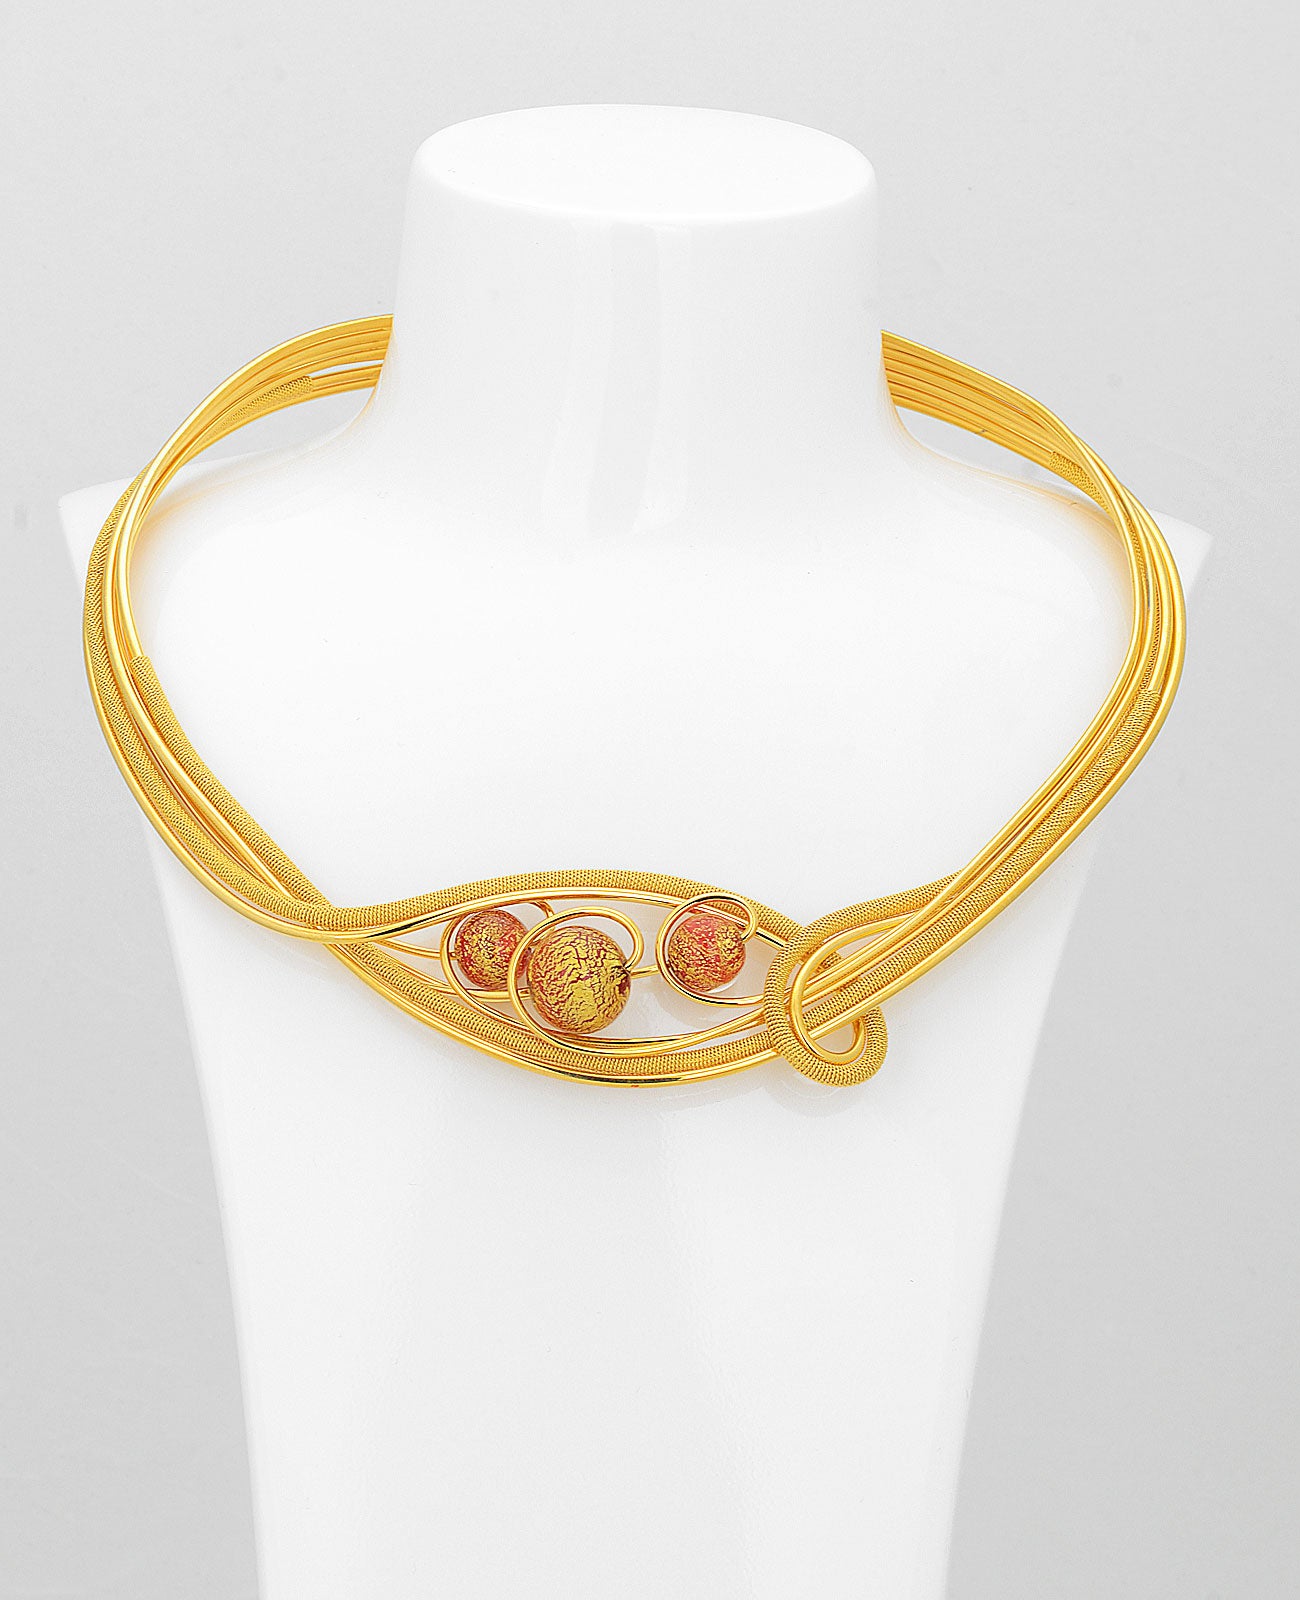 Futura Elit Gold Necklace in Murano Glass - Vetri D'Arte